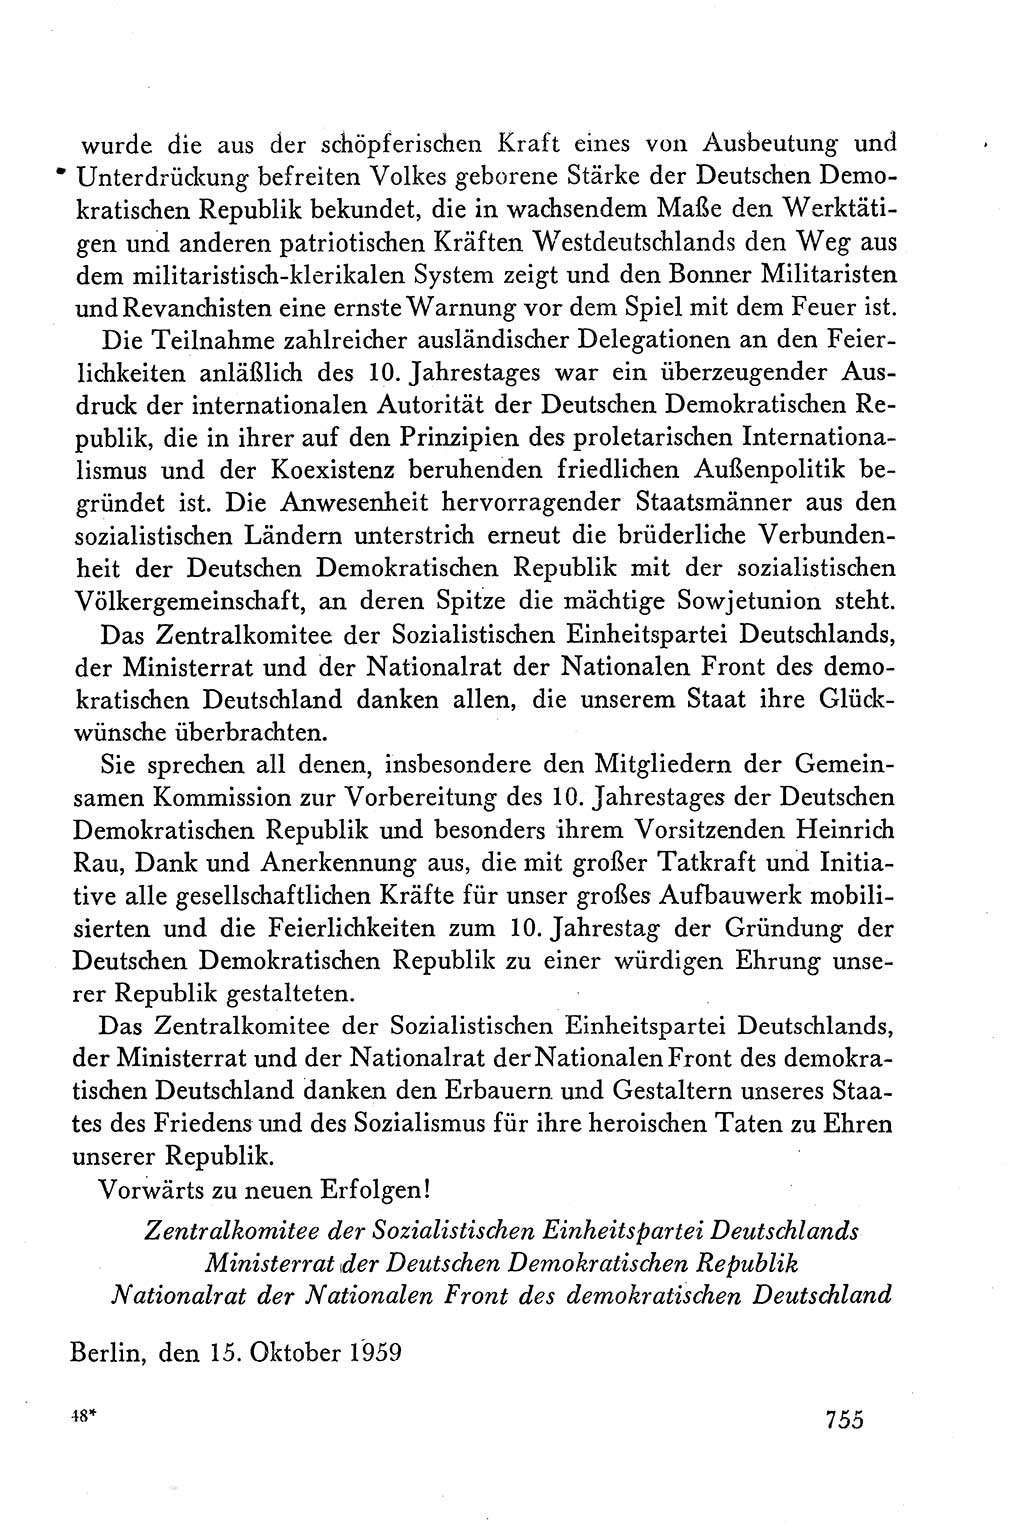 Dokumente der Sozialistischen Einheitspartei Deutschlands (SED) [Deutsche Demokratische Republik (DDR)] 1958-1959, Seite 755 (Dok. SED DDR 1958-1959, S. 755)